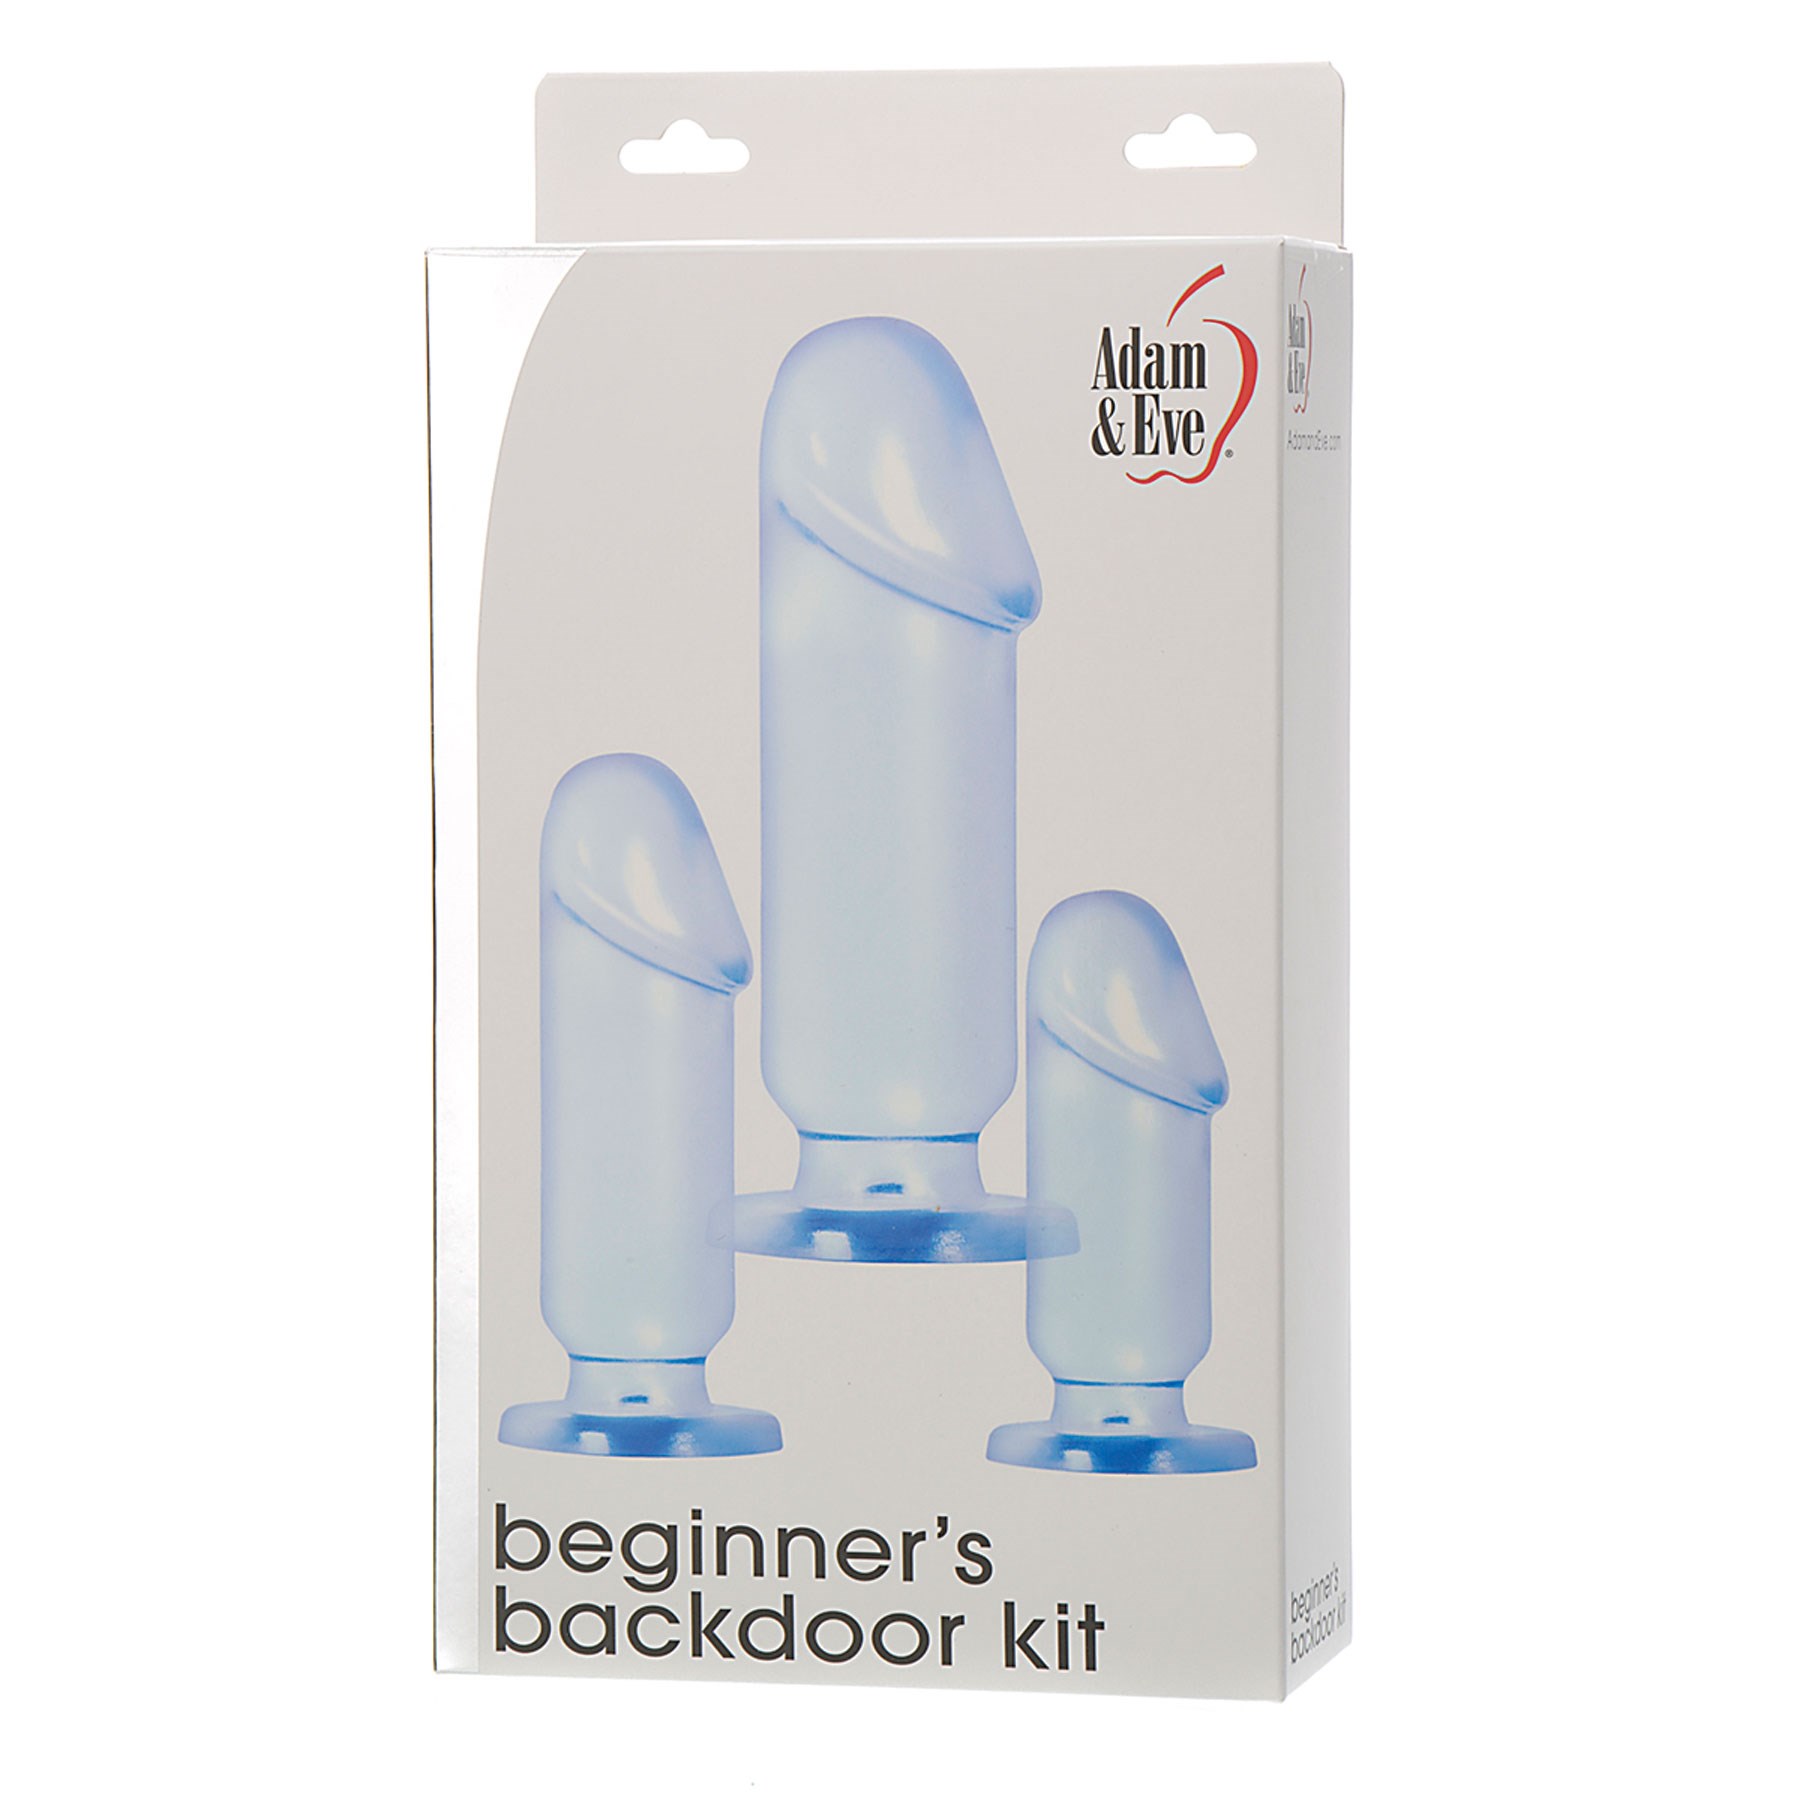 Adam & Eve's Beginner’s Backdoor Kit box